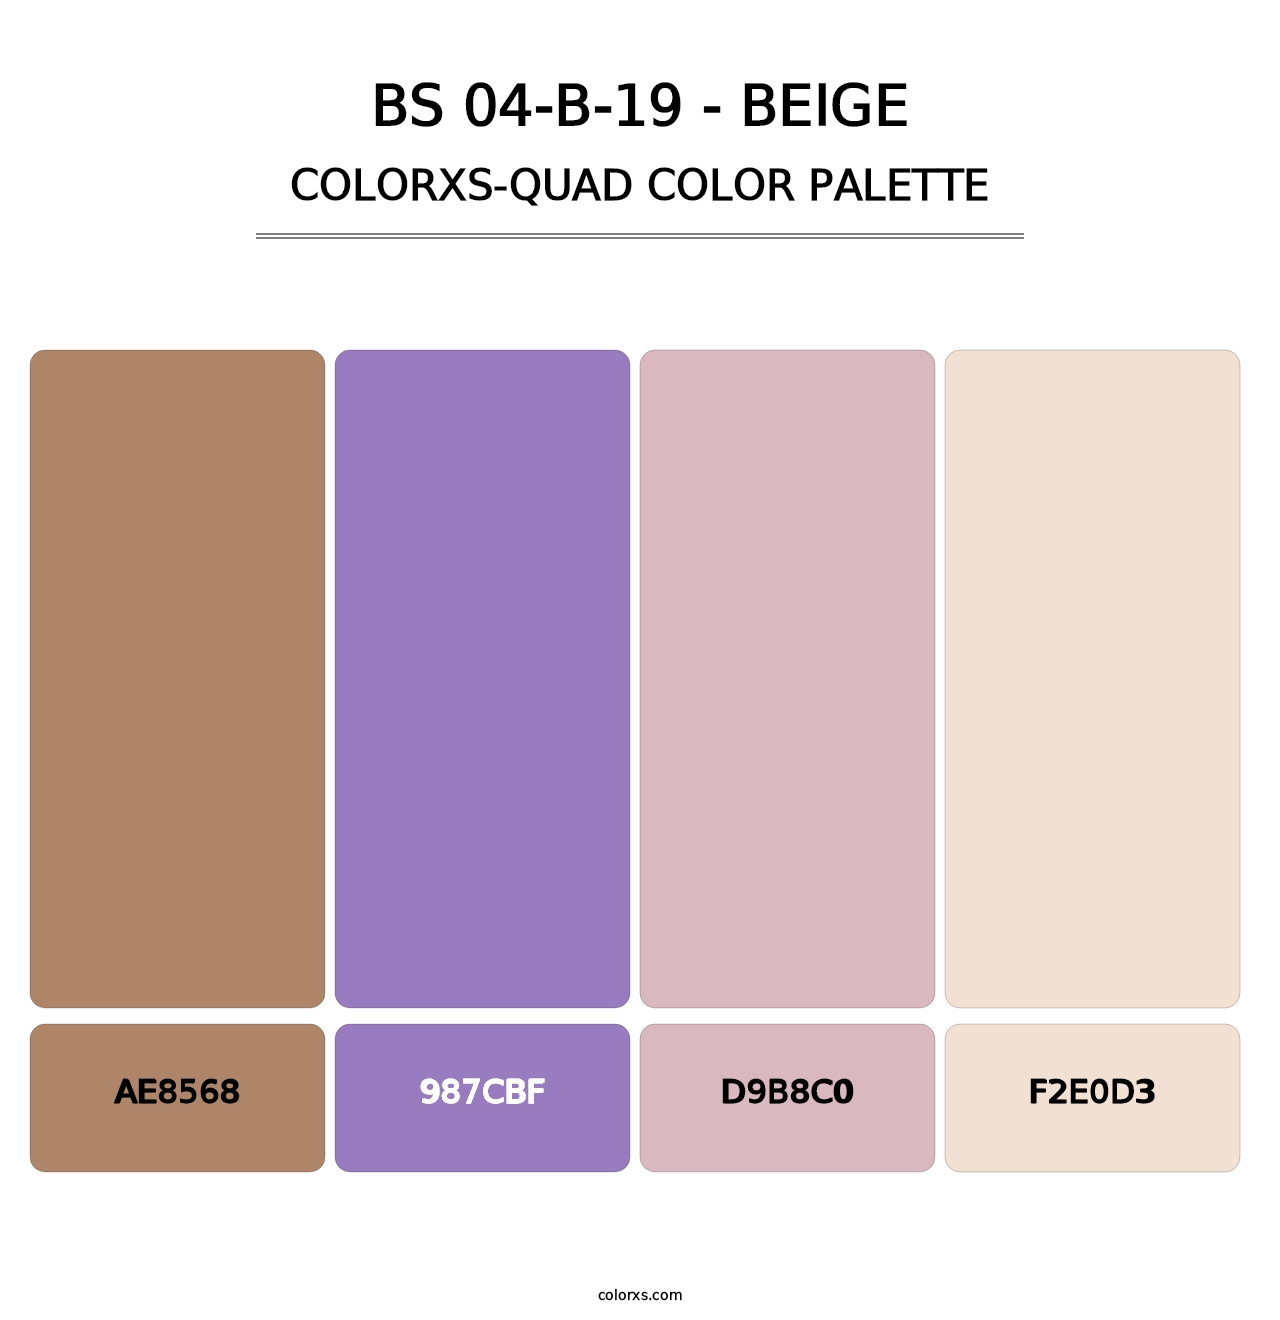 BS 04-B-19 - Beige - Colorxs Quad Palette